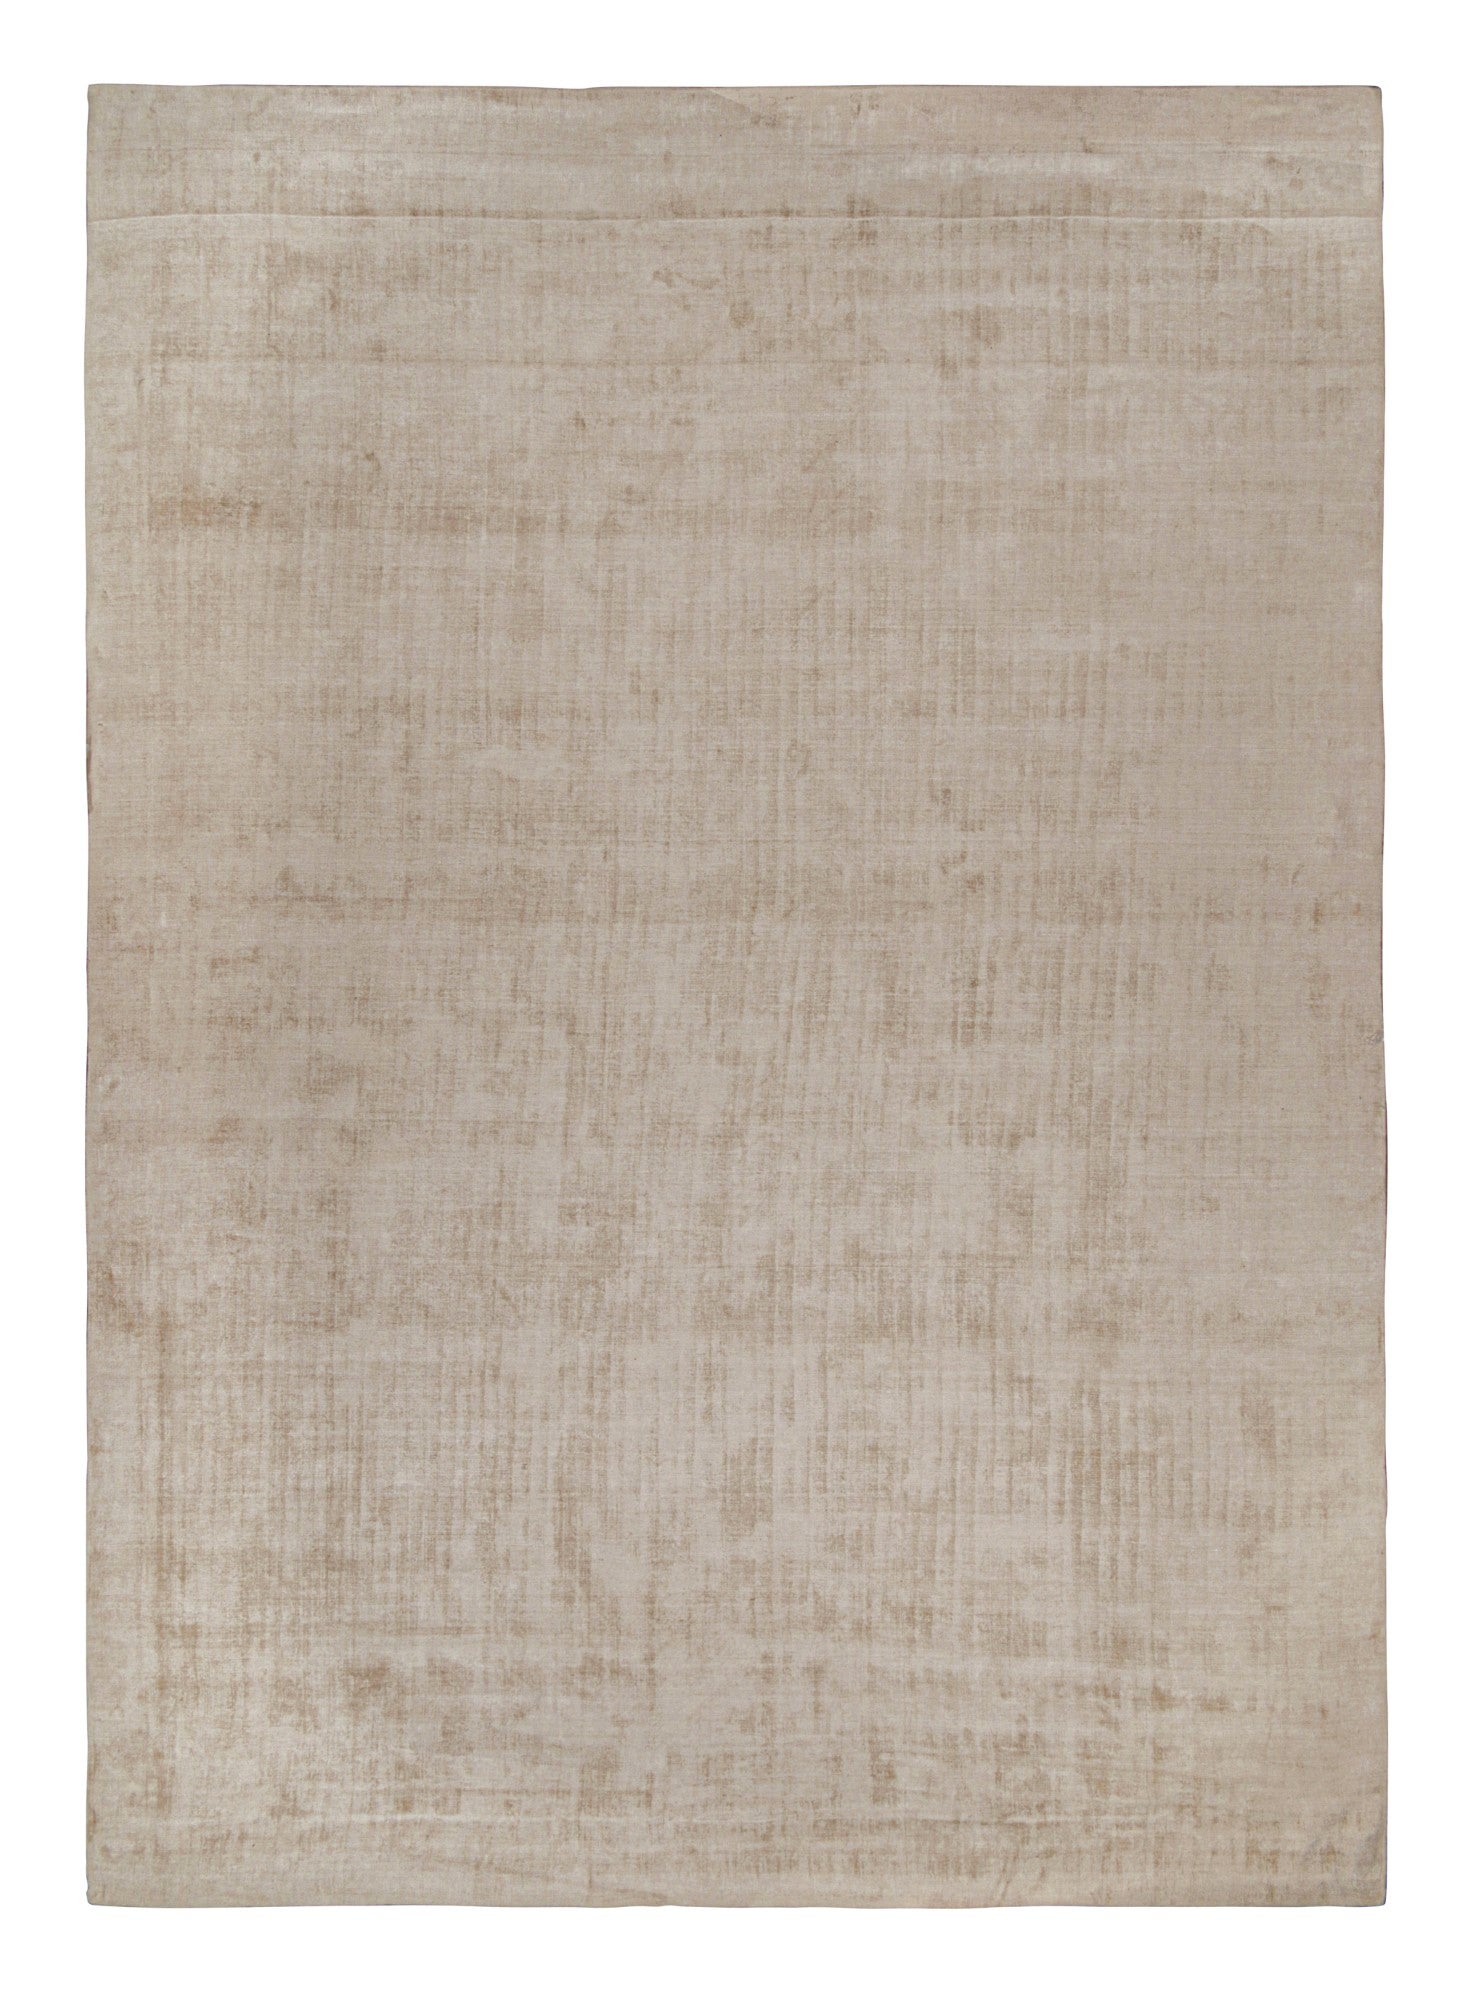 Dieser palastgroße Teppich im Format 14x20 ist ein großartiger Neuzugang in der Texture of Color Collection'S von Rug & Kilim. Handgeknüpft aus Kunstseide.

Kenner werden bemerken, dass dieses Stück aus unserer neuen Light on Loom-Linie stammt,